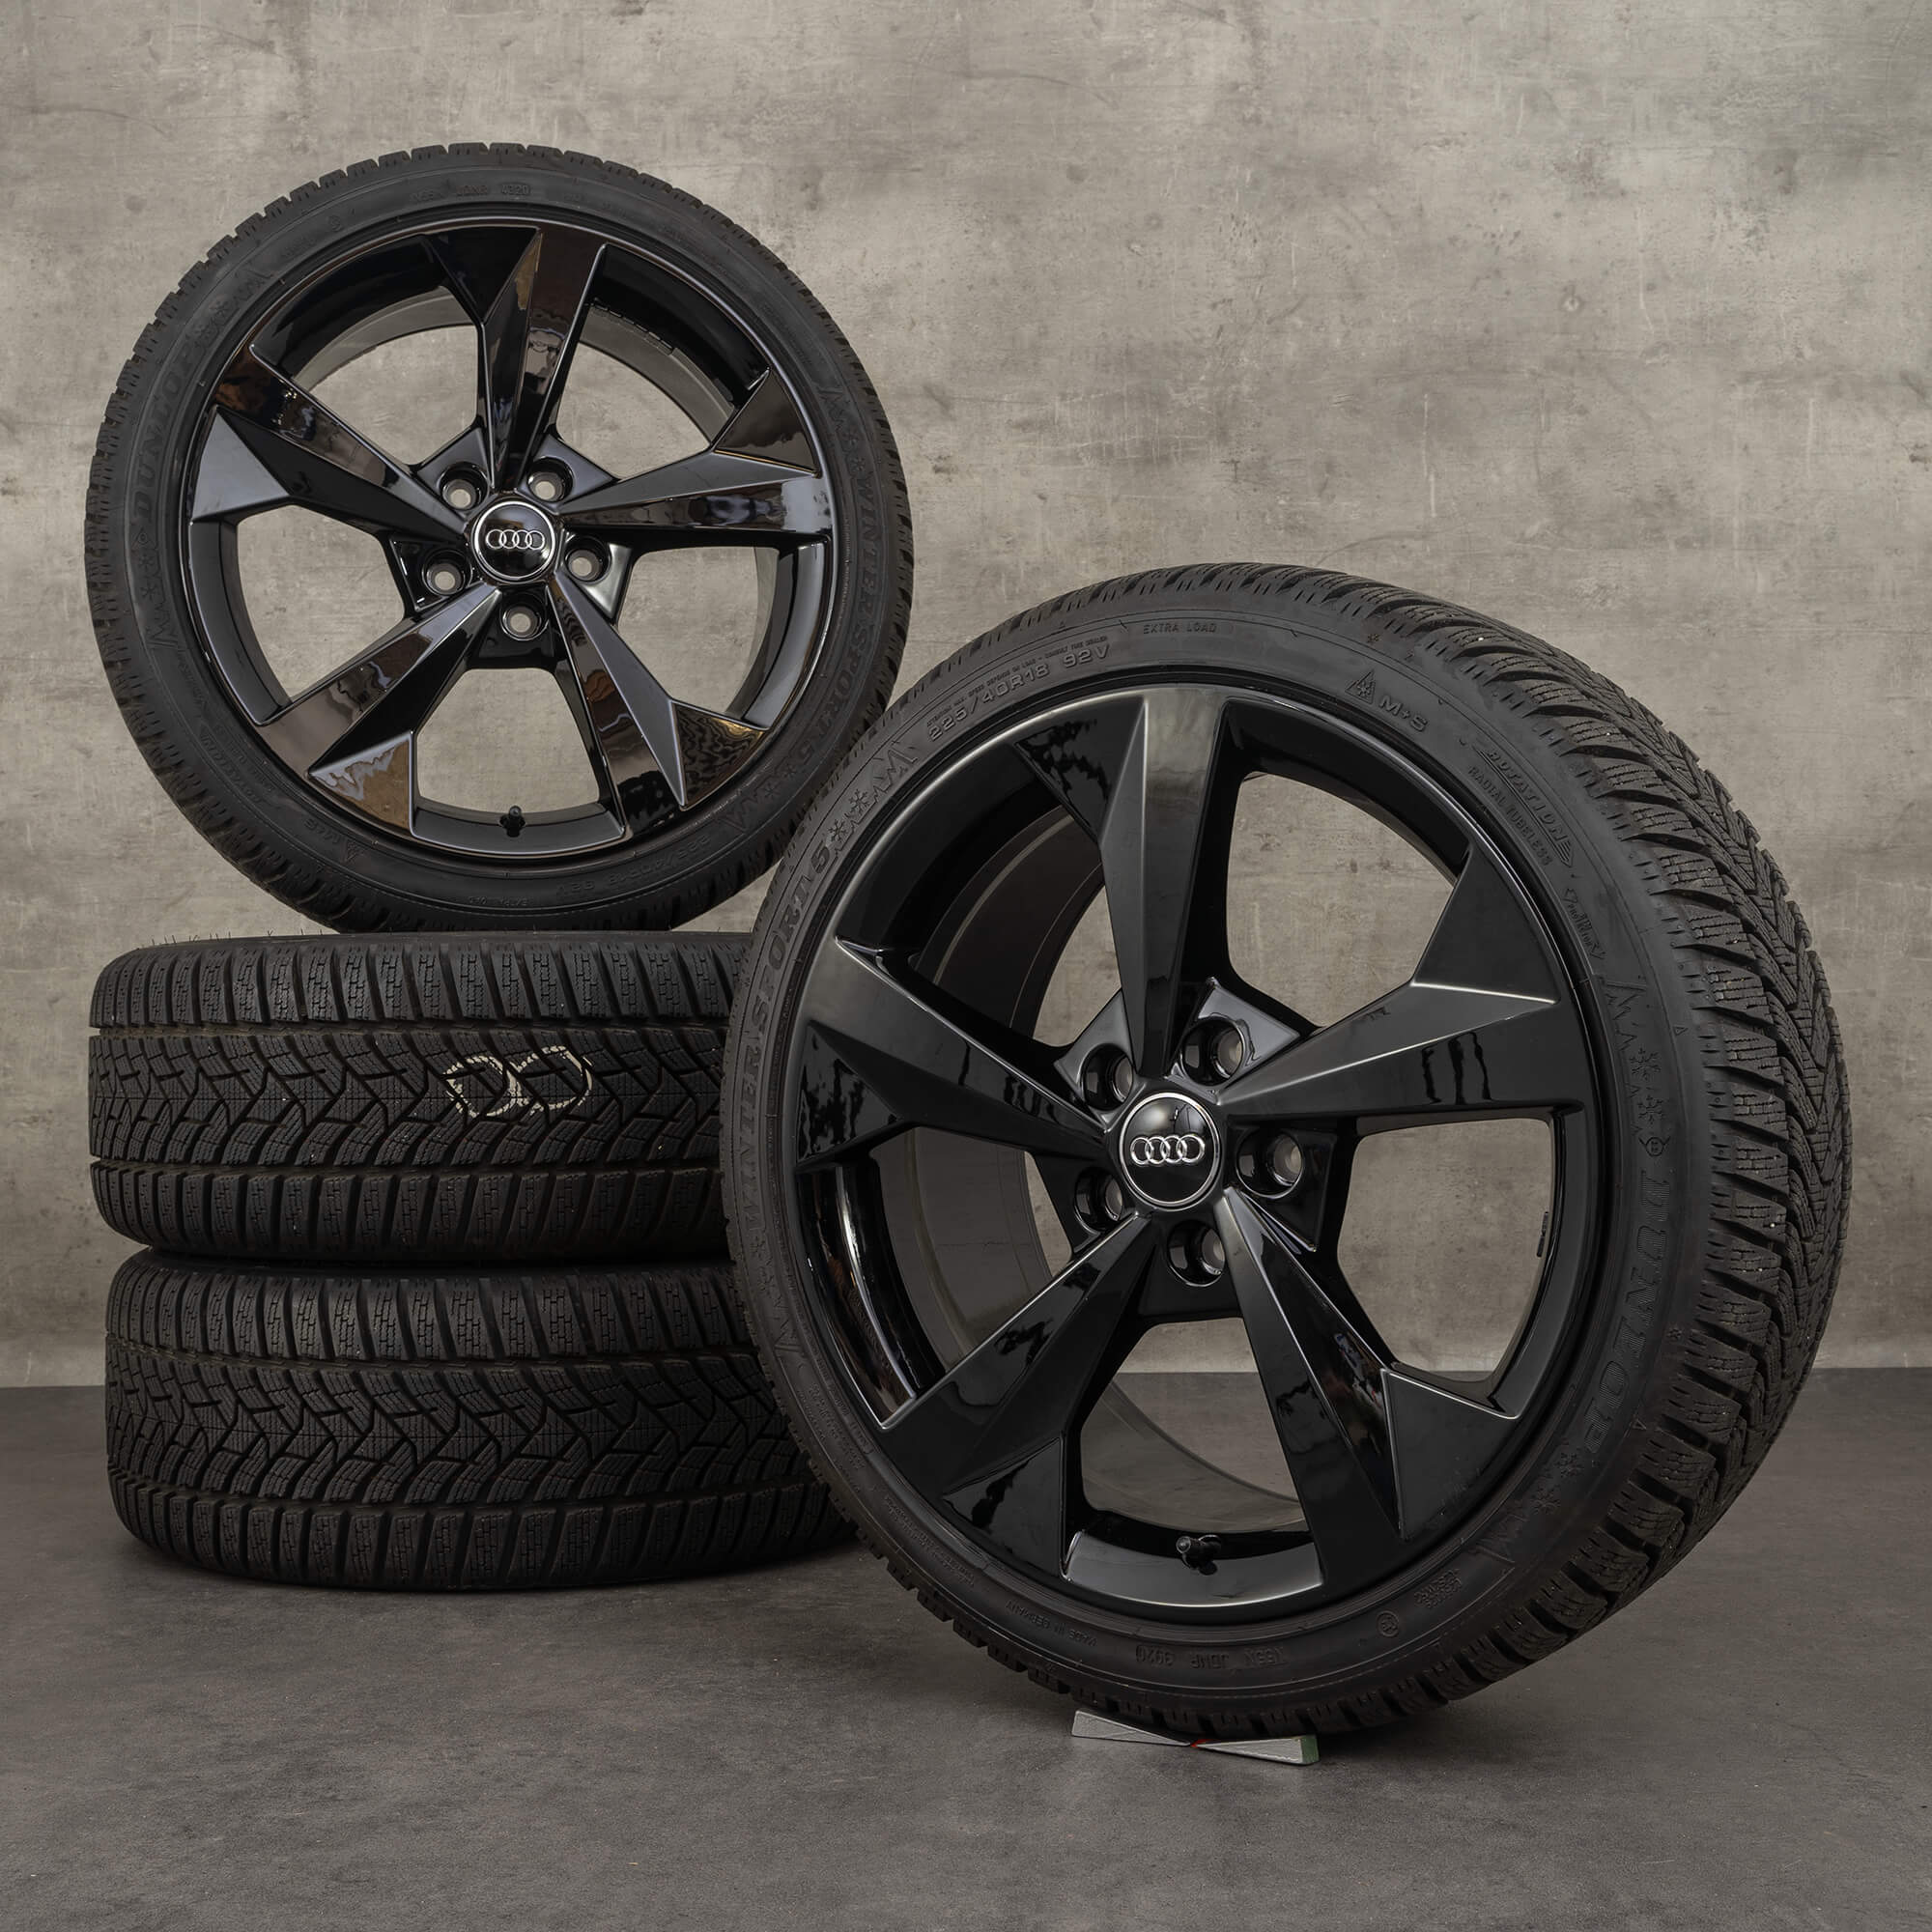 Audi S3 winter A3 winter rims 18 8Y0601025J wheels 8Y rims inch tires alloy